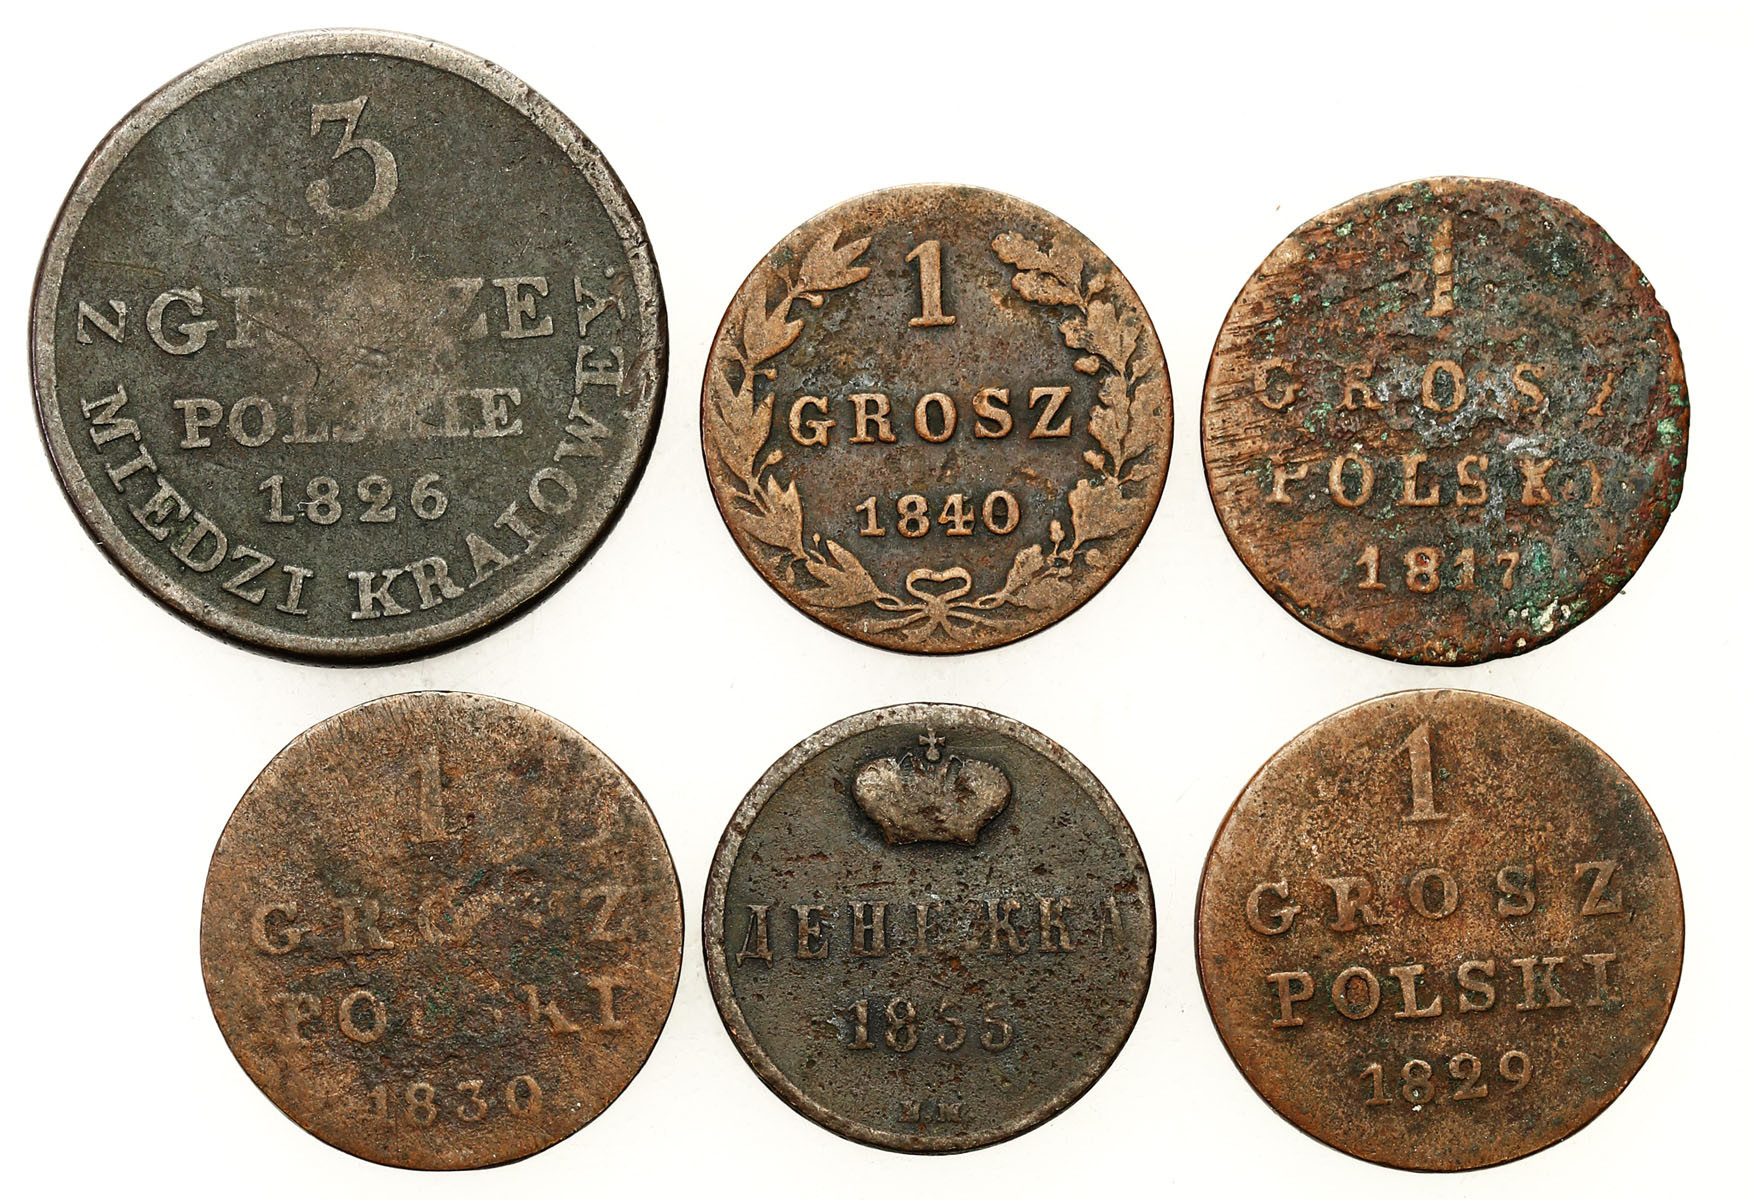 Polska XIX w./Rosja. Grosz 1817, 1830, 1840, 3 grosze 1826, dienieżka 1855, BM, zestaw 6 monet